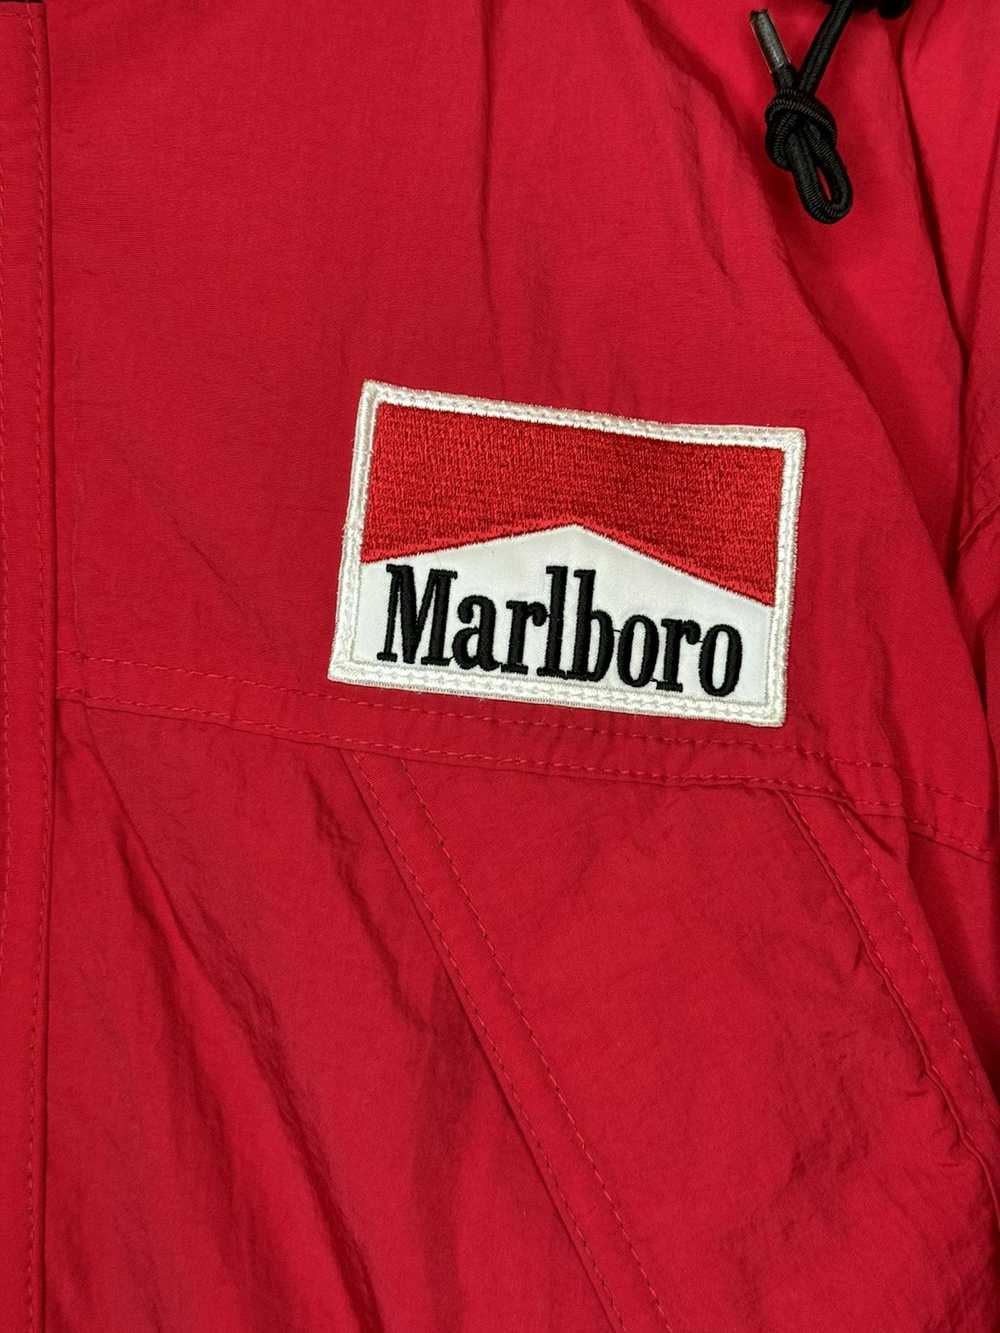 Marlboro × Streetwear × Vintage Vintage Marlboro … - image 3